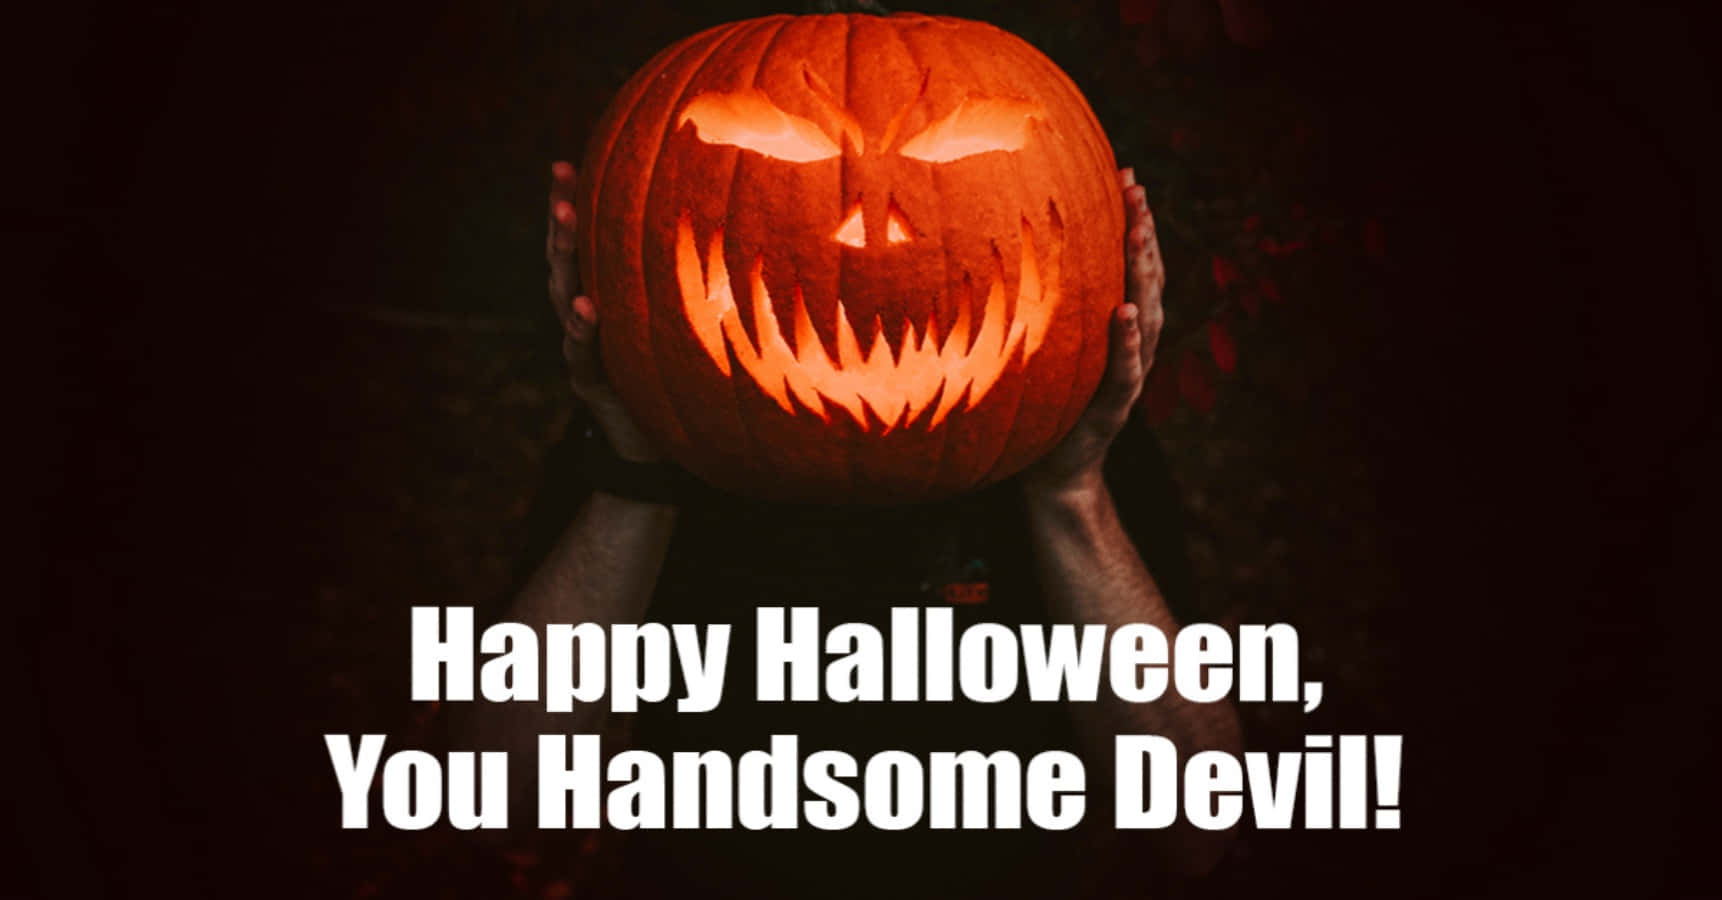 Divertidasimágenes De Halloween Del Apuesto Diablo